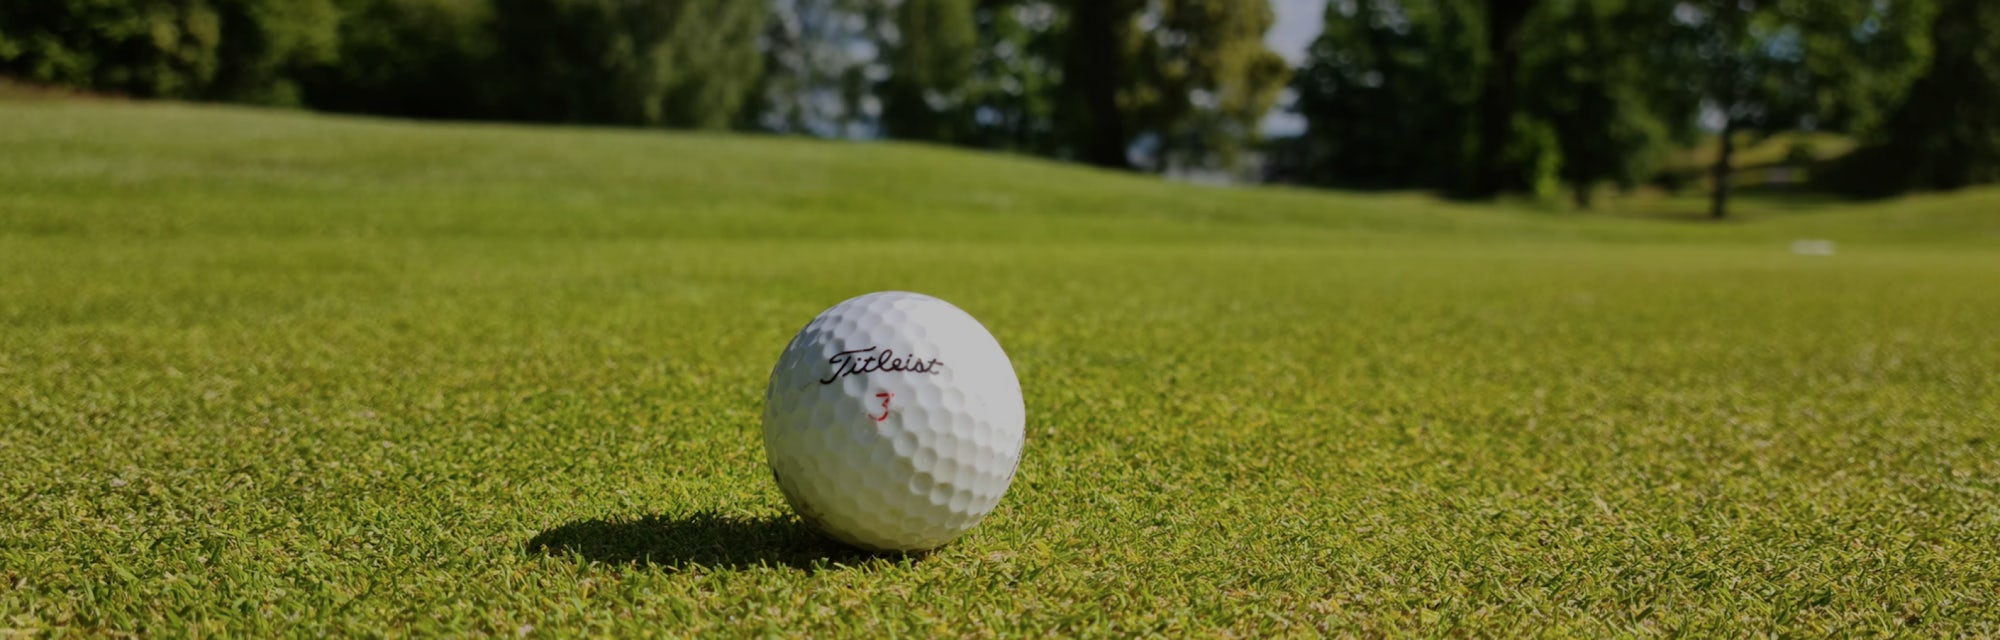 Golf days golf ball